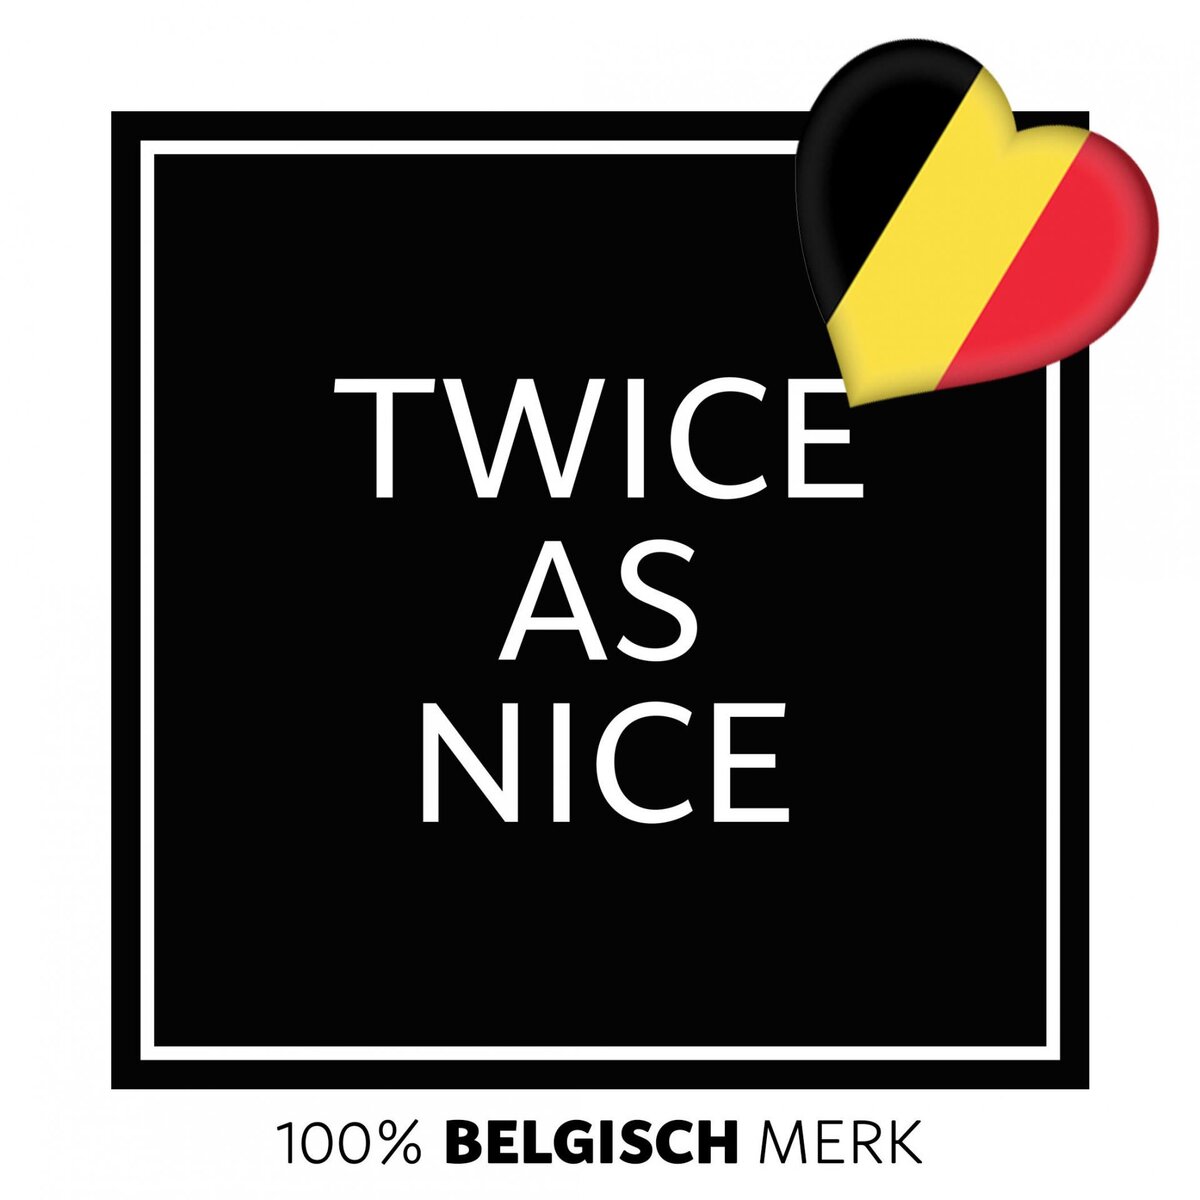 Twice As Nice logo